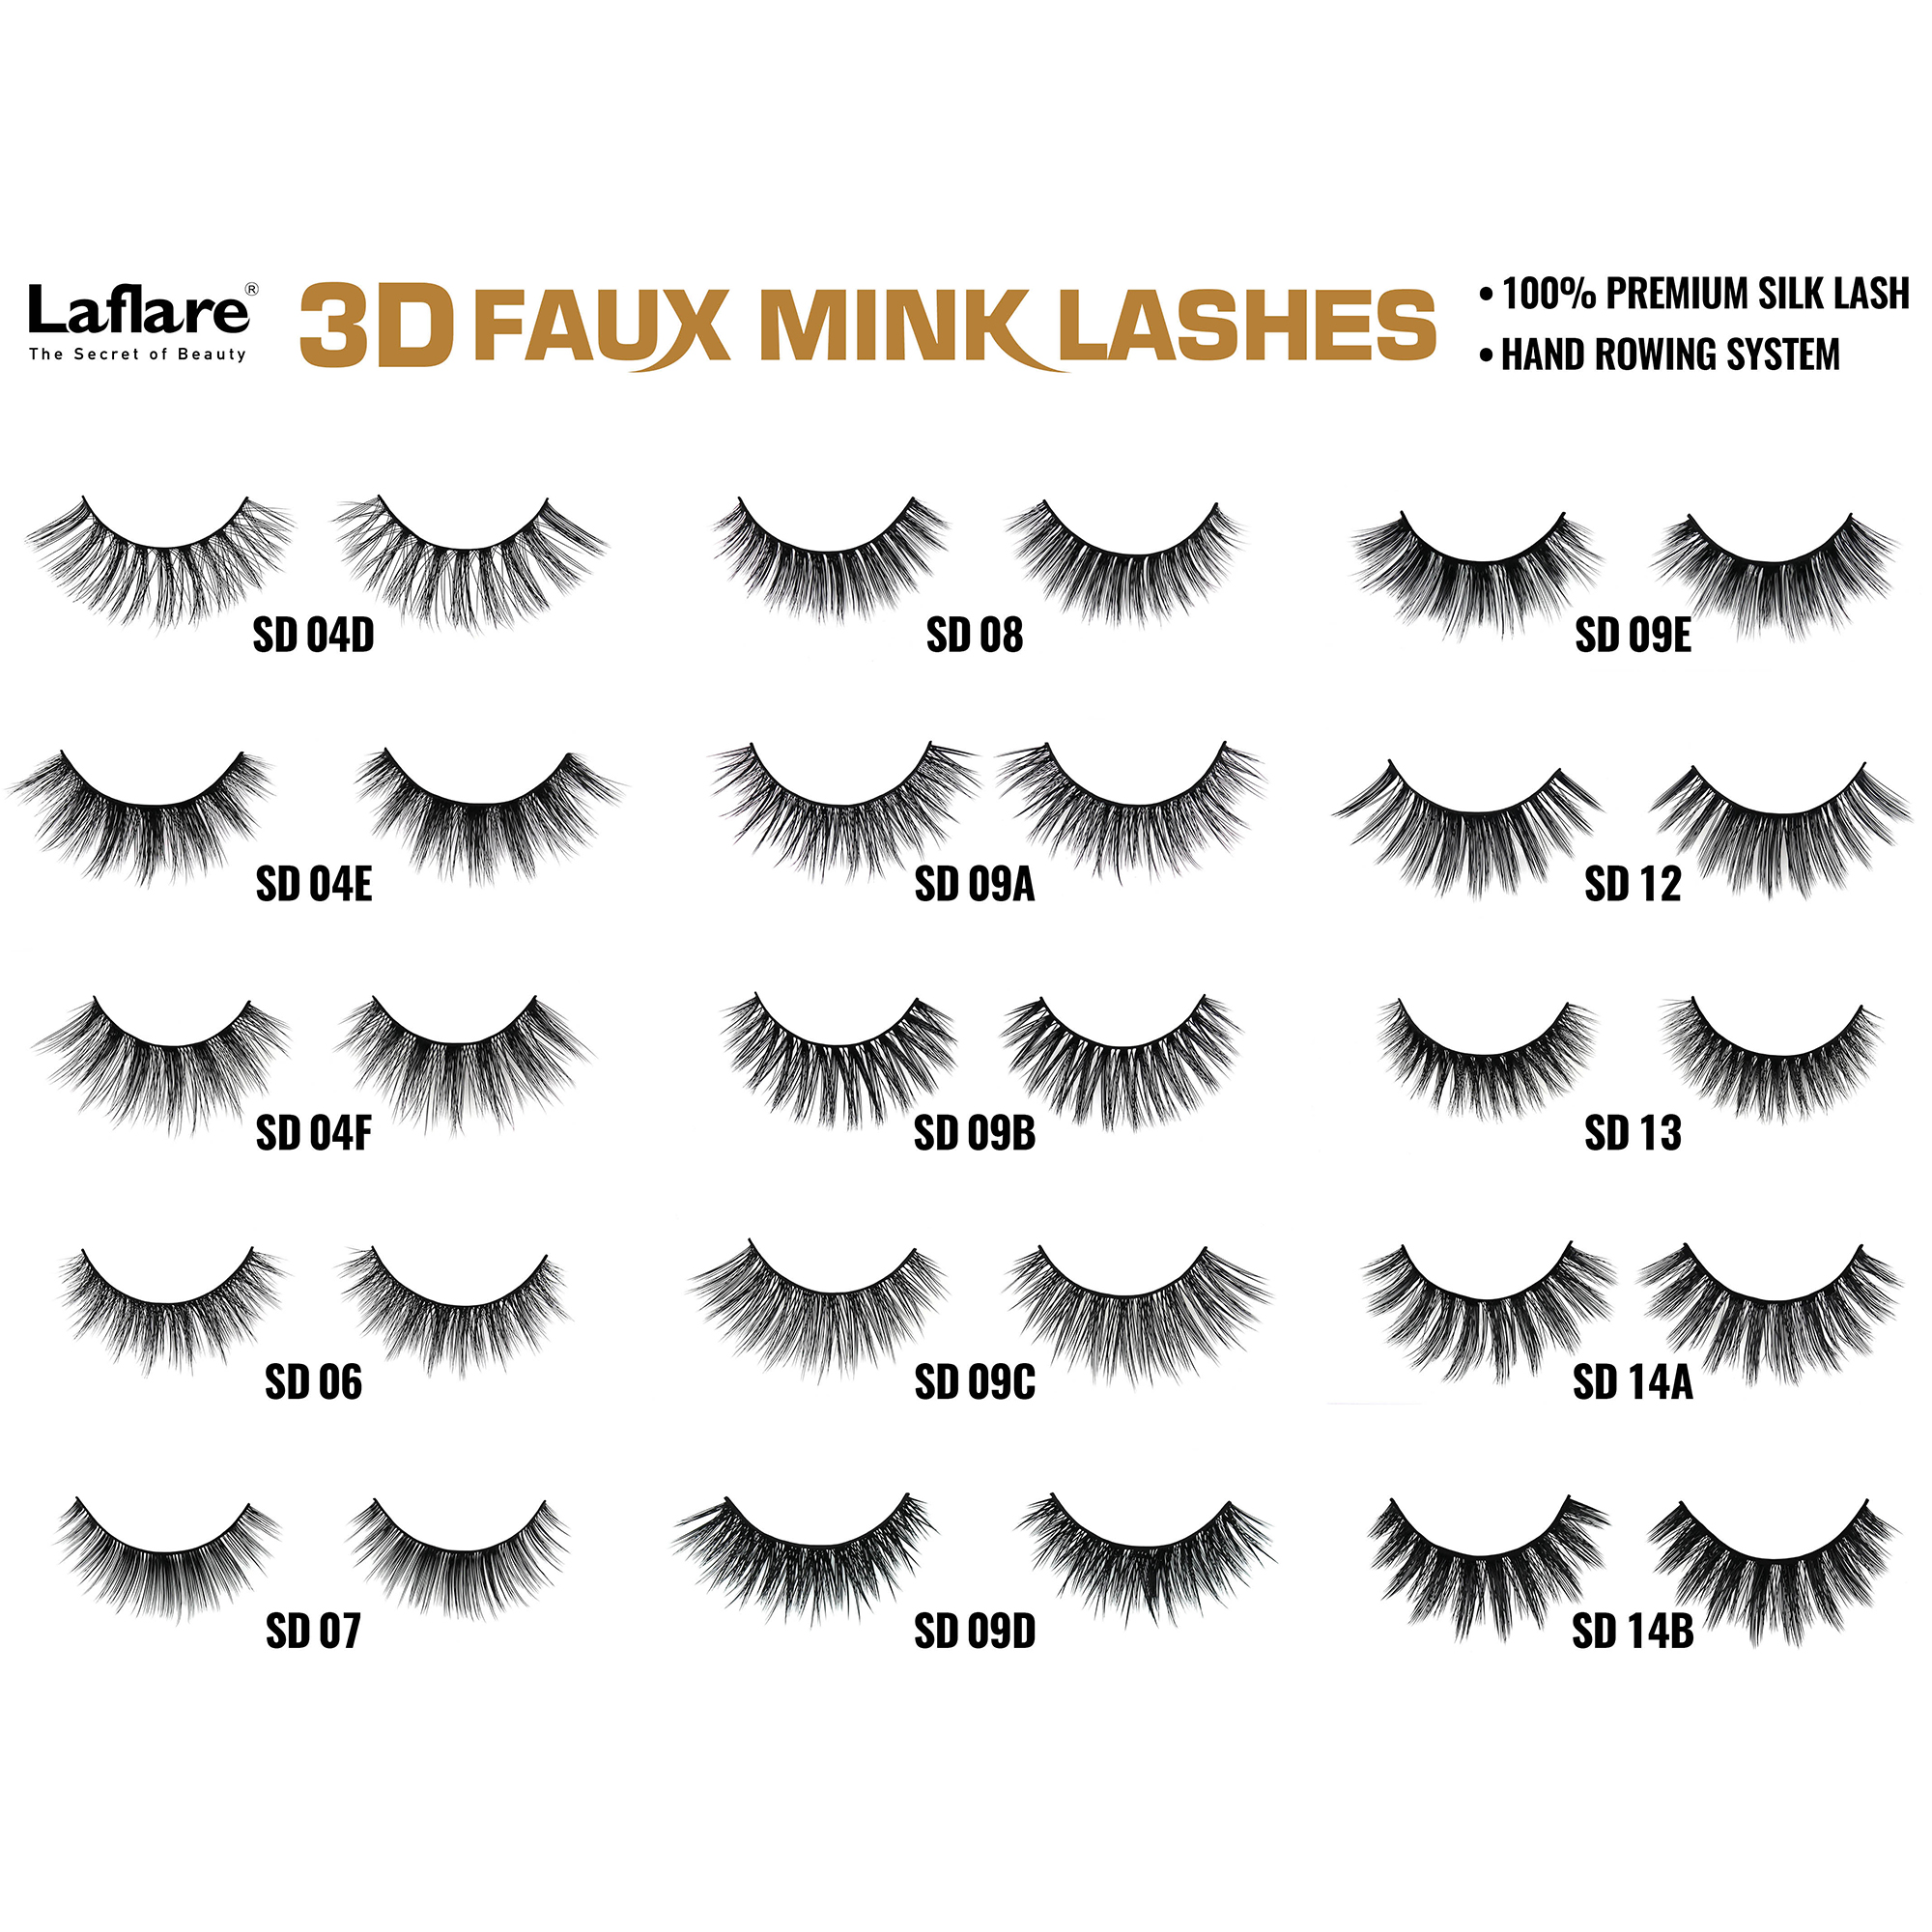 LAFLARE 3d Faux Mink Lashes - SD09B